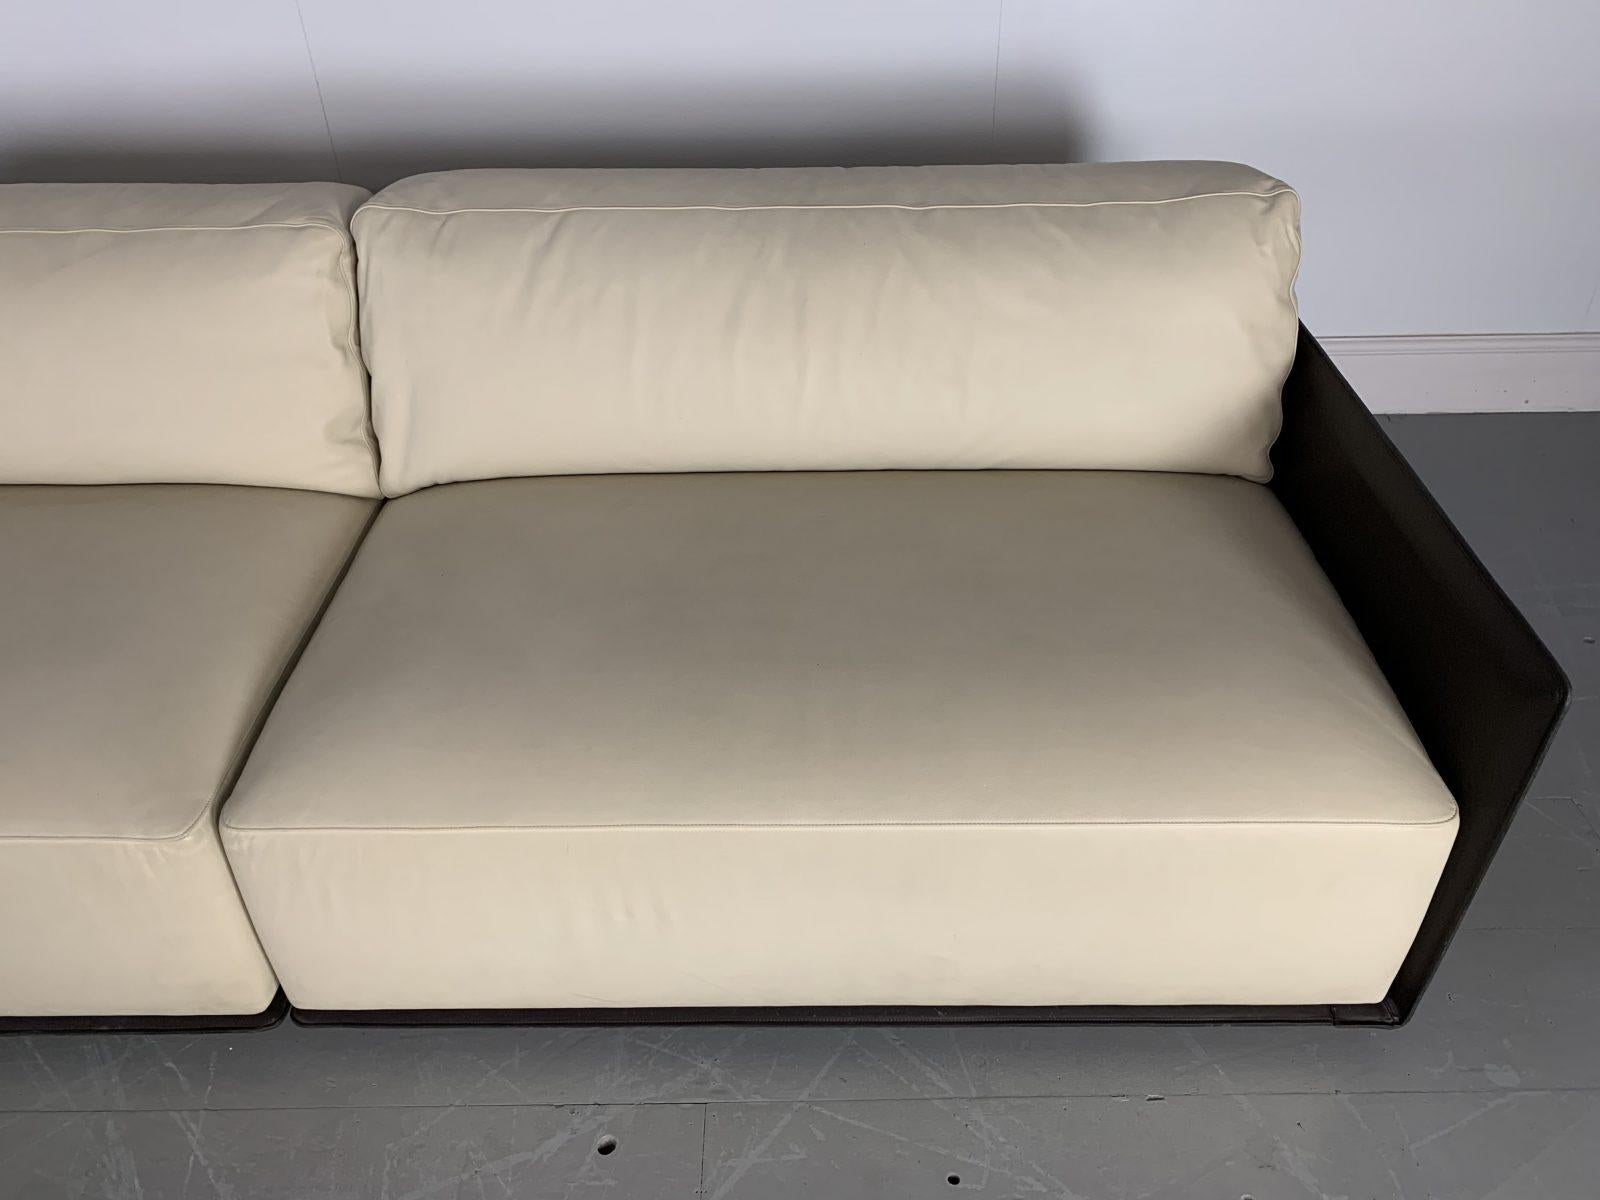 Sublime Poltrona Frau “Cassiopea” Large Sofa with Bookcase-End in Saddle Leather 5